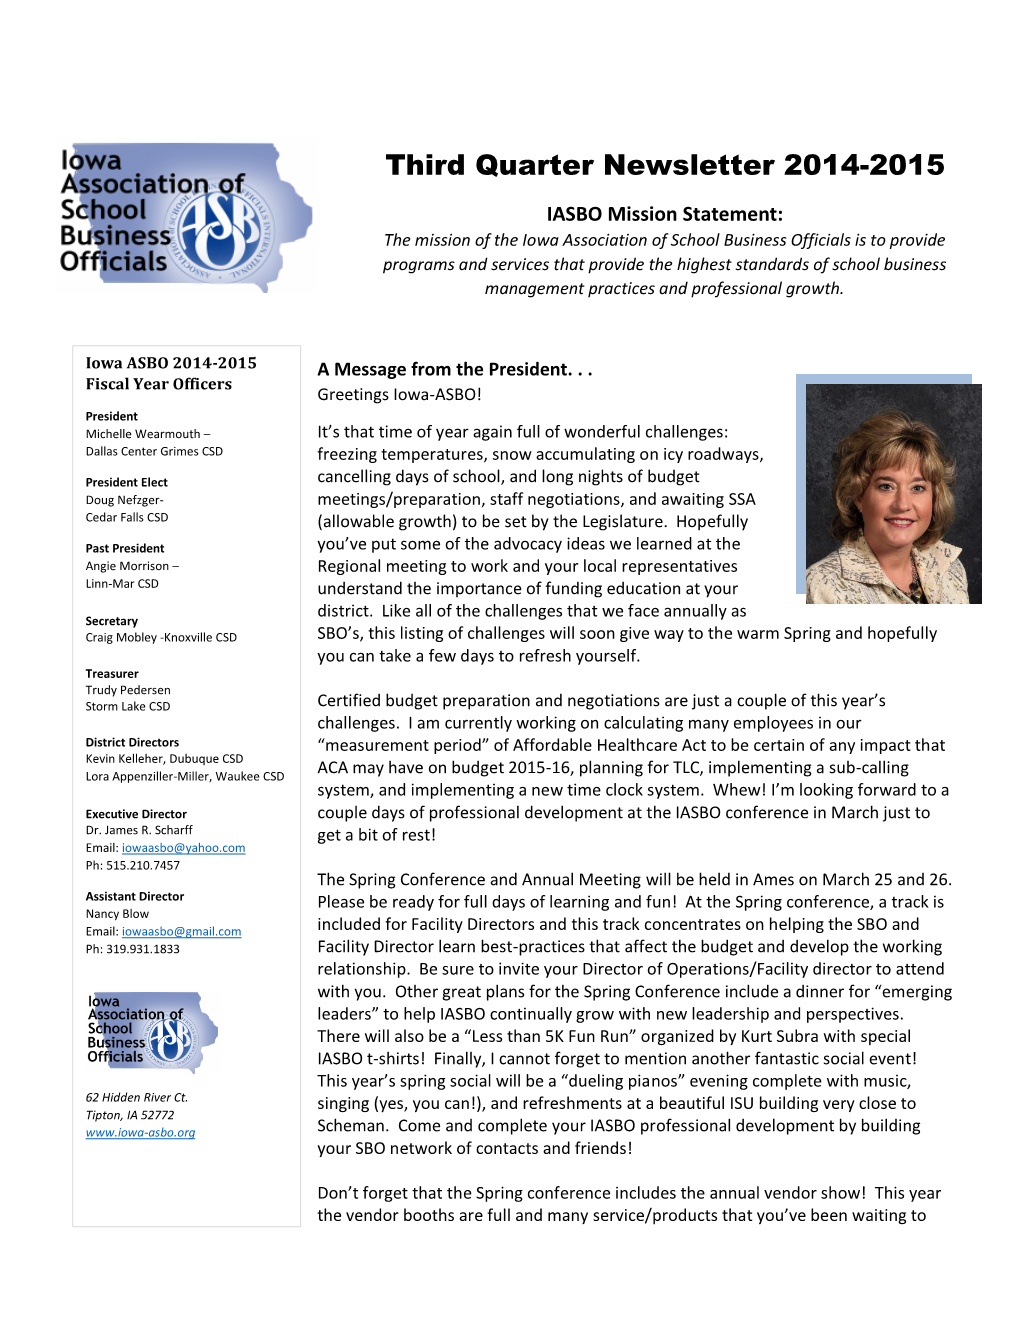 First Quarter Newsletter 2014-2015